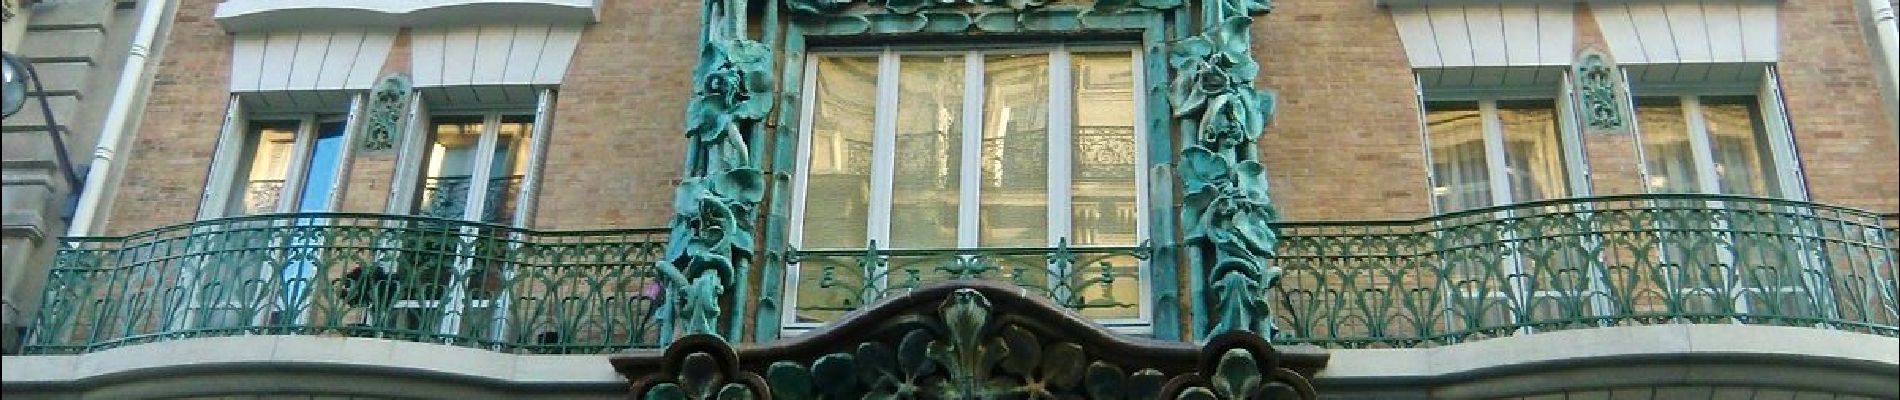 POI Paris - Belle façade d'immeuble de 1900 - Photo